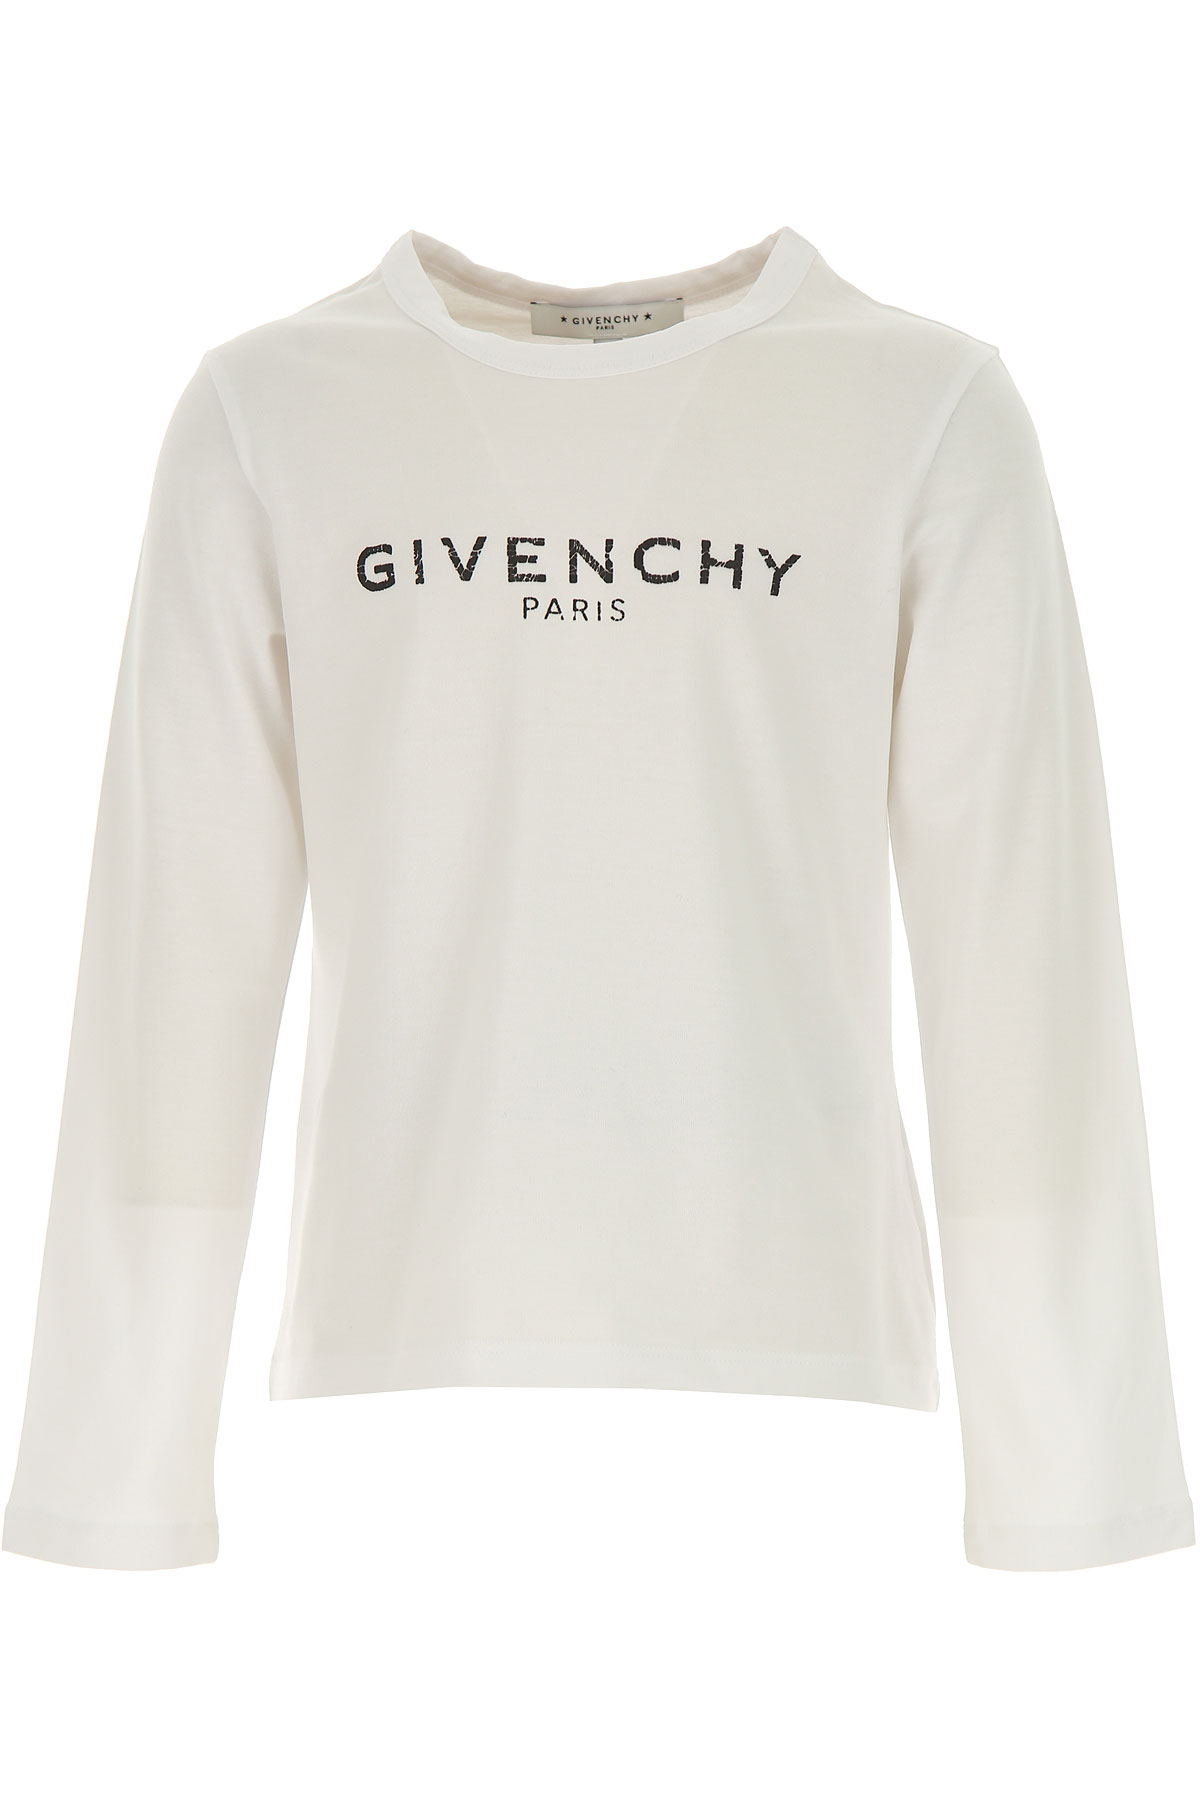 Givenchy Kinder T-Shirt für Mädchen, Weiss, Baumwolle, 2017, 10Y 12Y 4Y 8Y